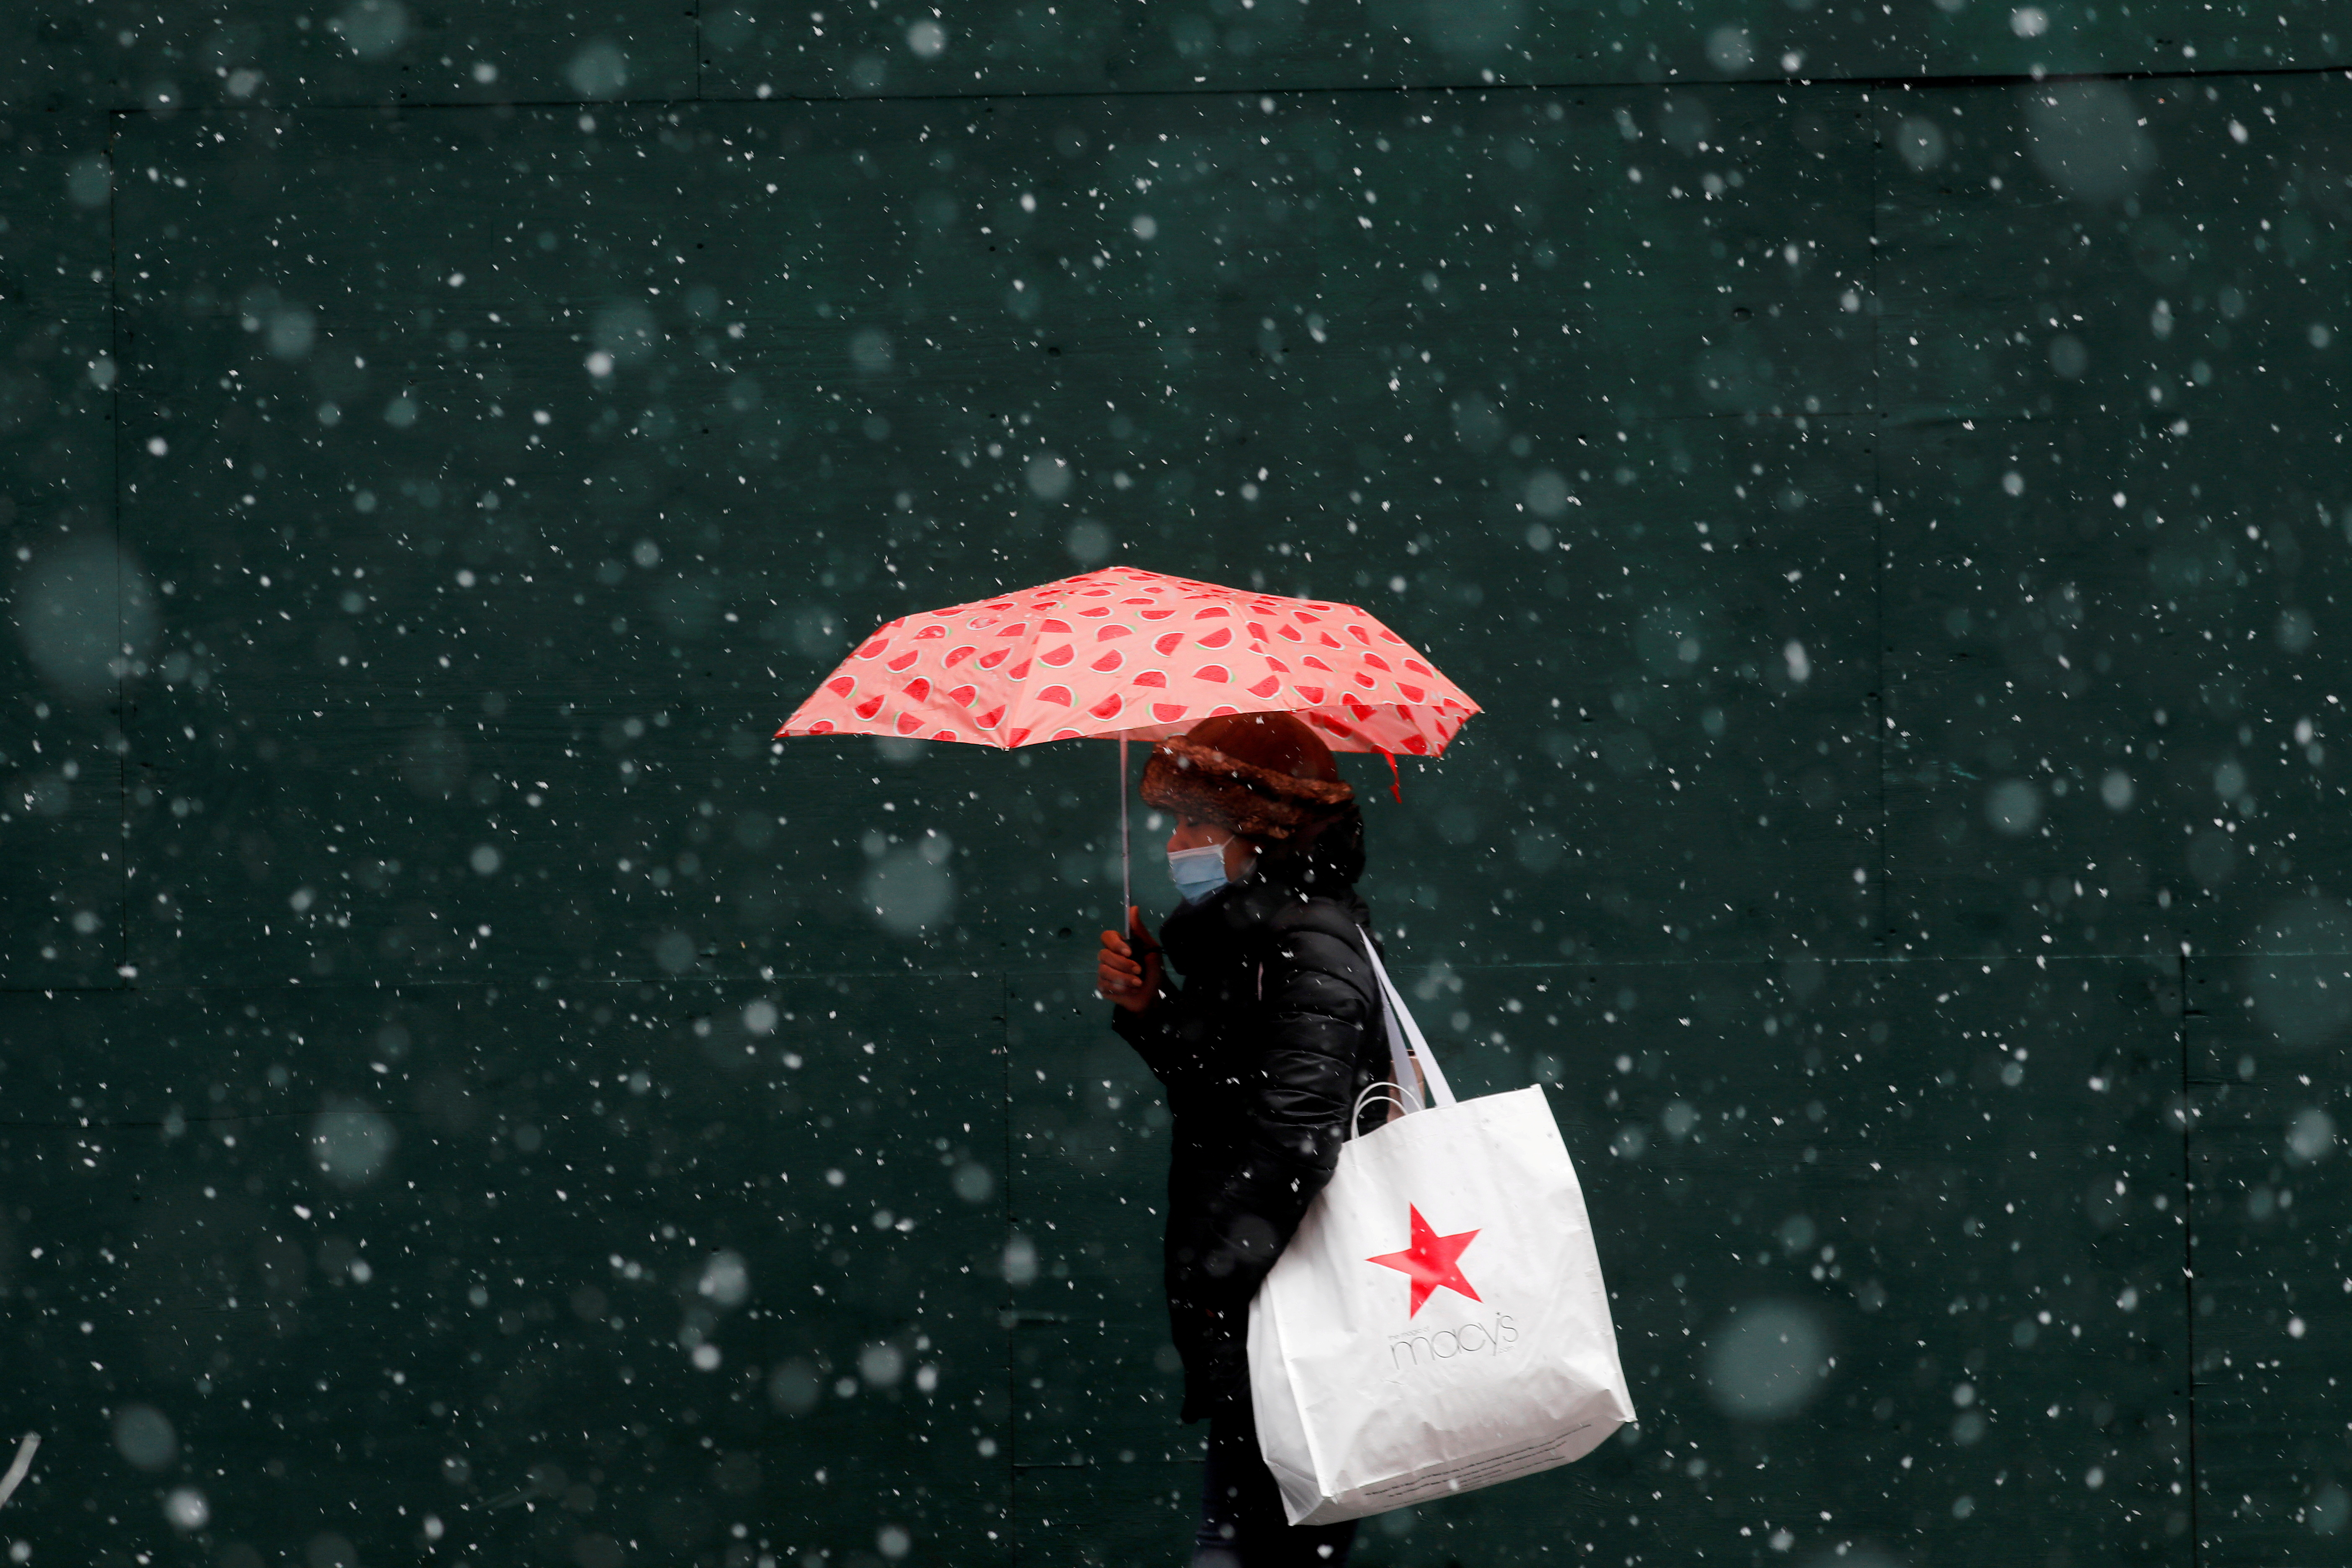 Una mujer que lleva una bolsa de Macy's camina sobre la nieve que cae mientras una tormenta de invierno se mueve hacia el noreste de los Estados Unidos, en Nueva York